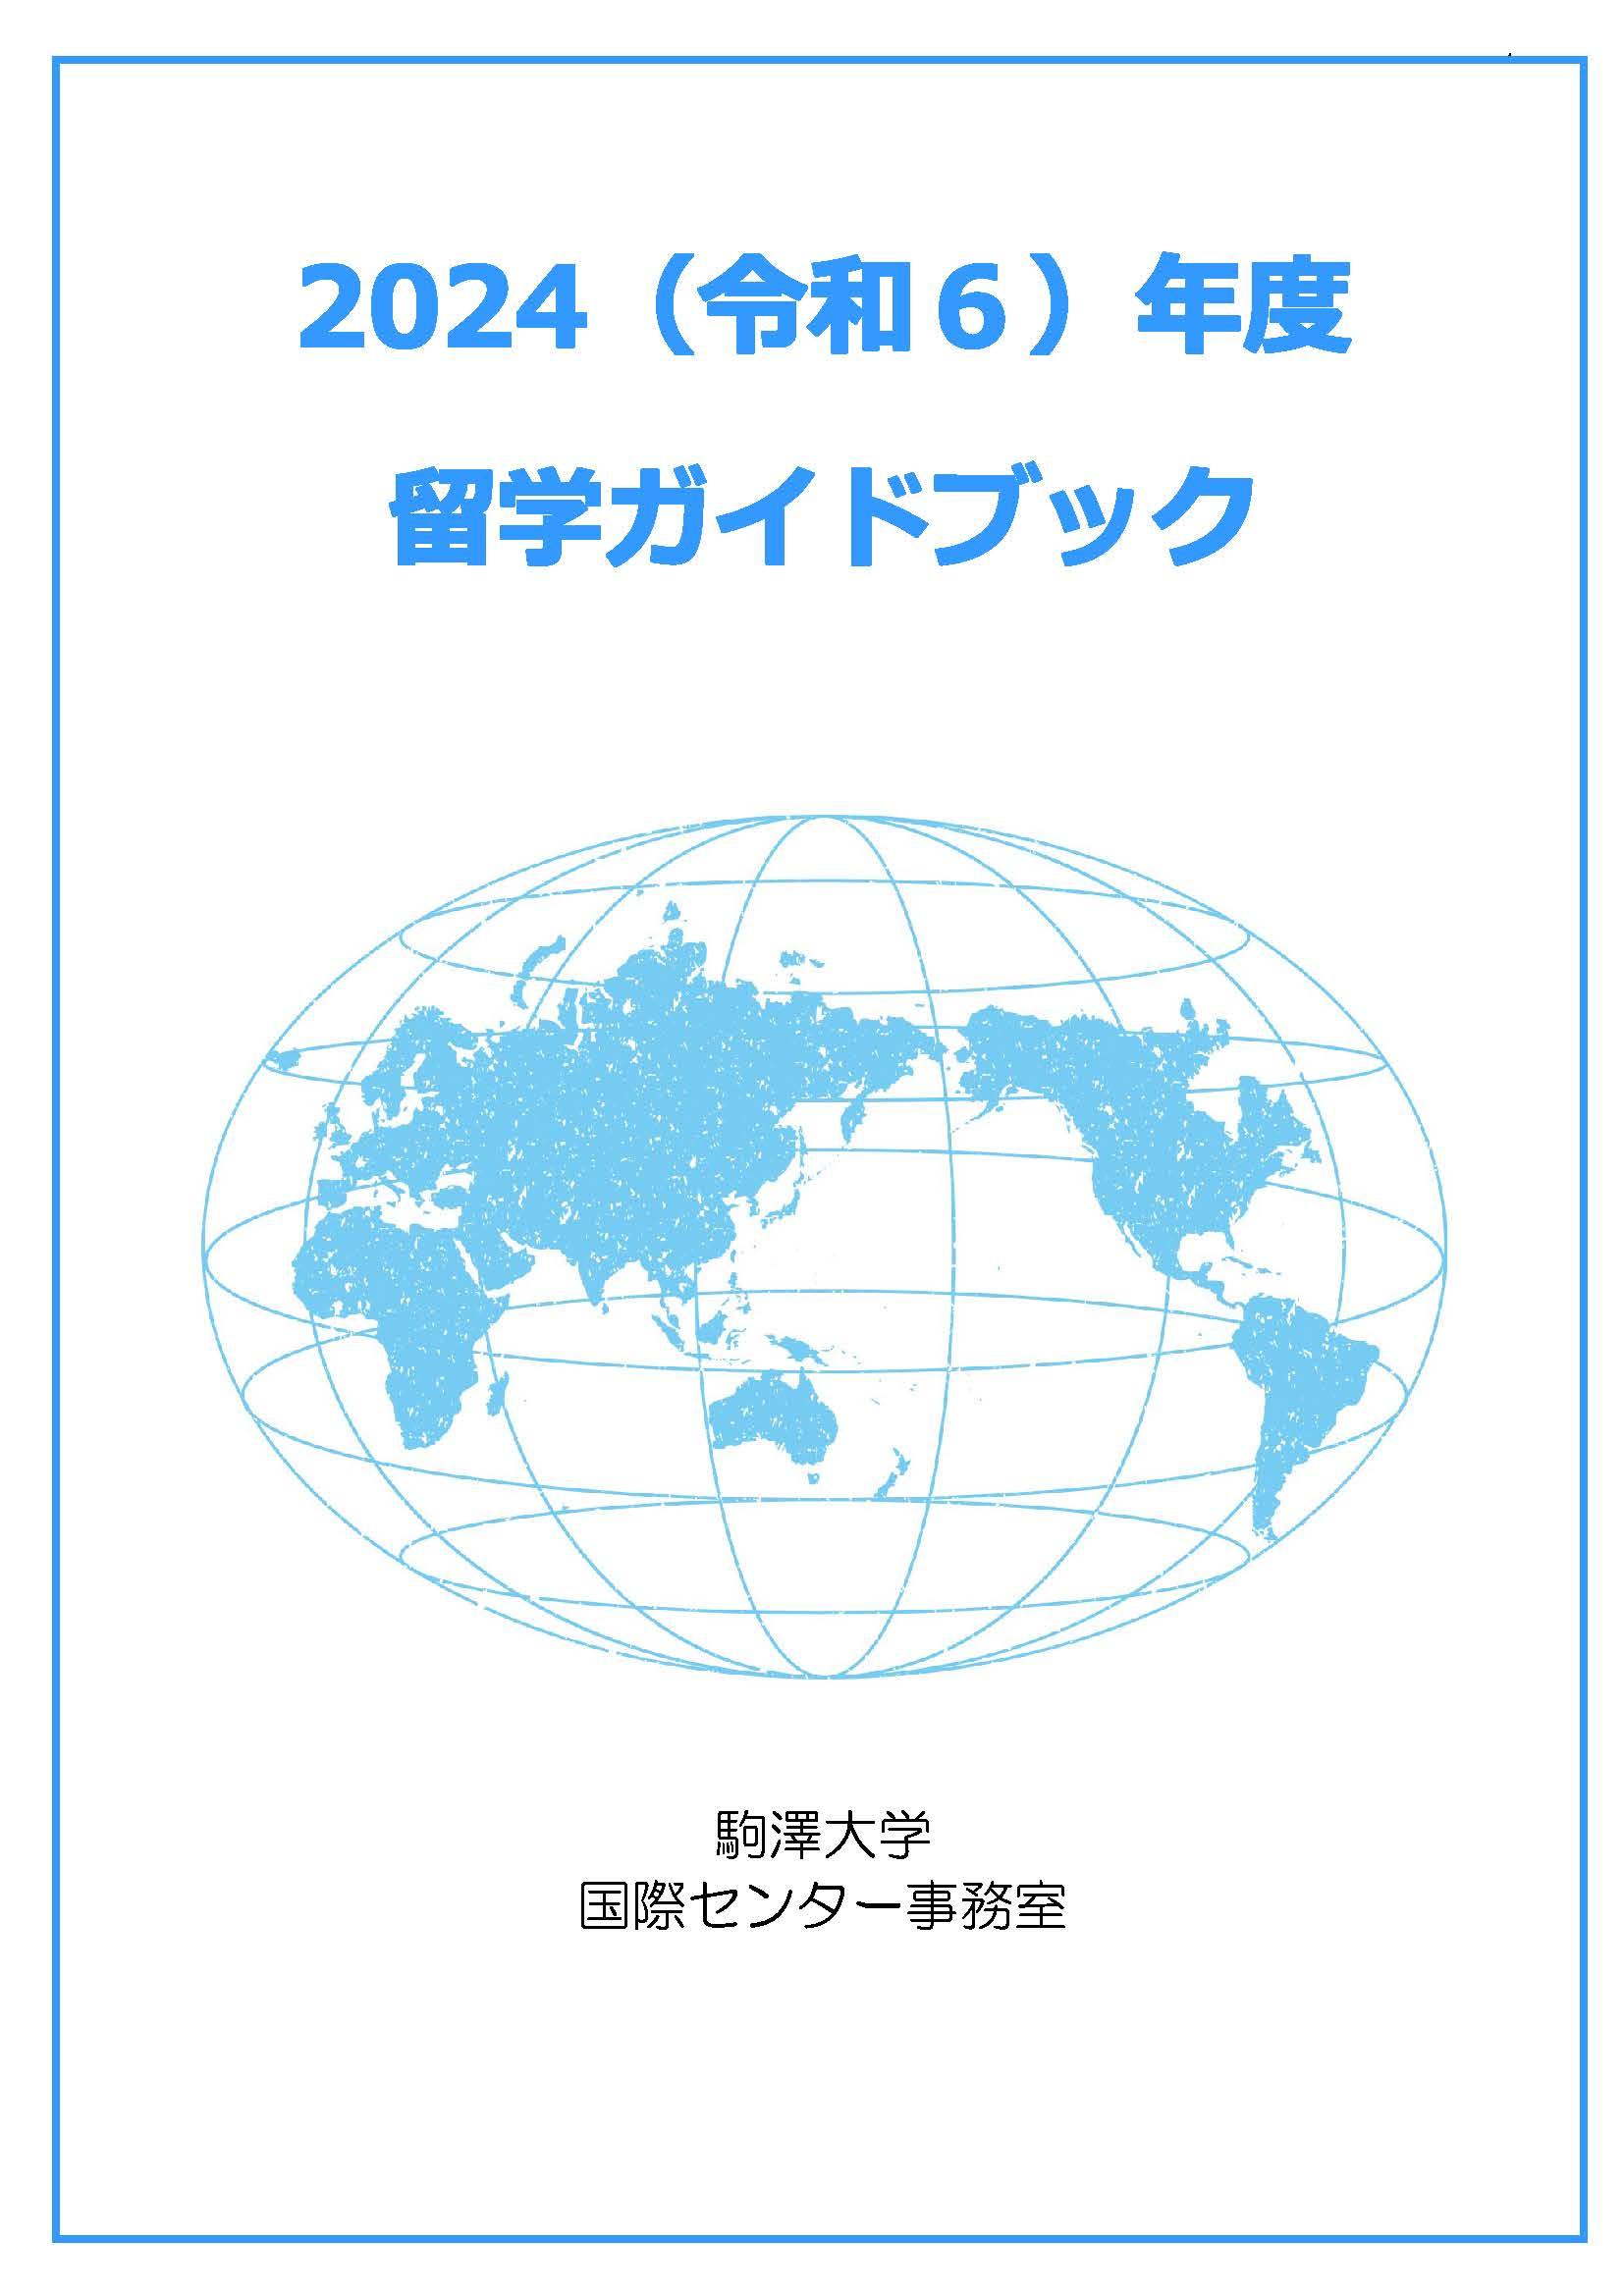 2024留学ガイドブック冊子_表紙画像.jpg